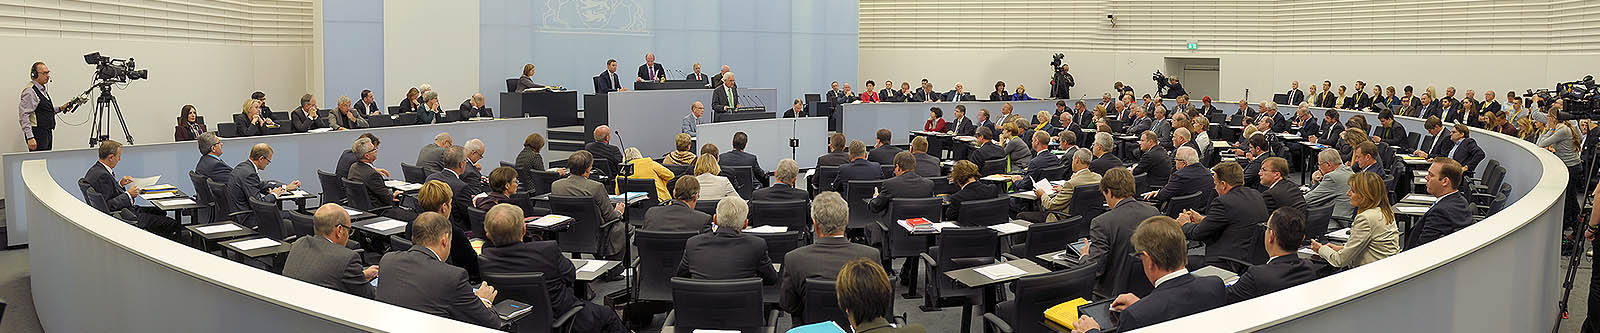 Plenarsitzung im Landtag